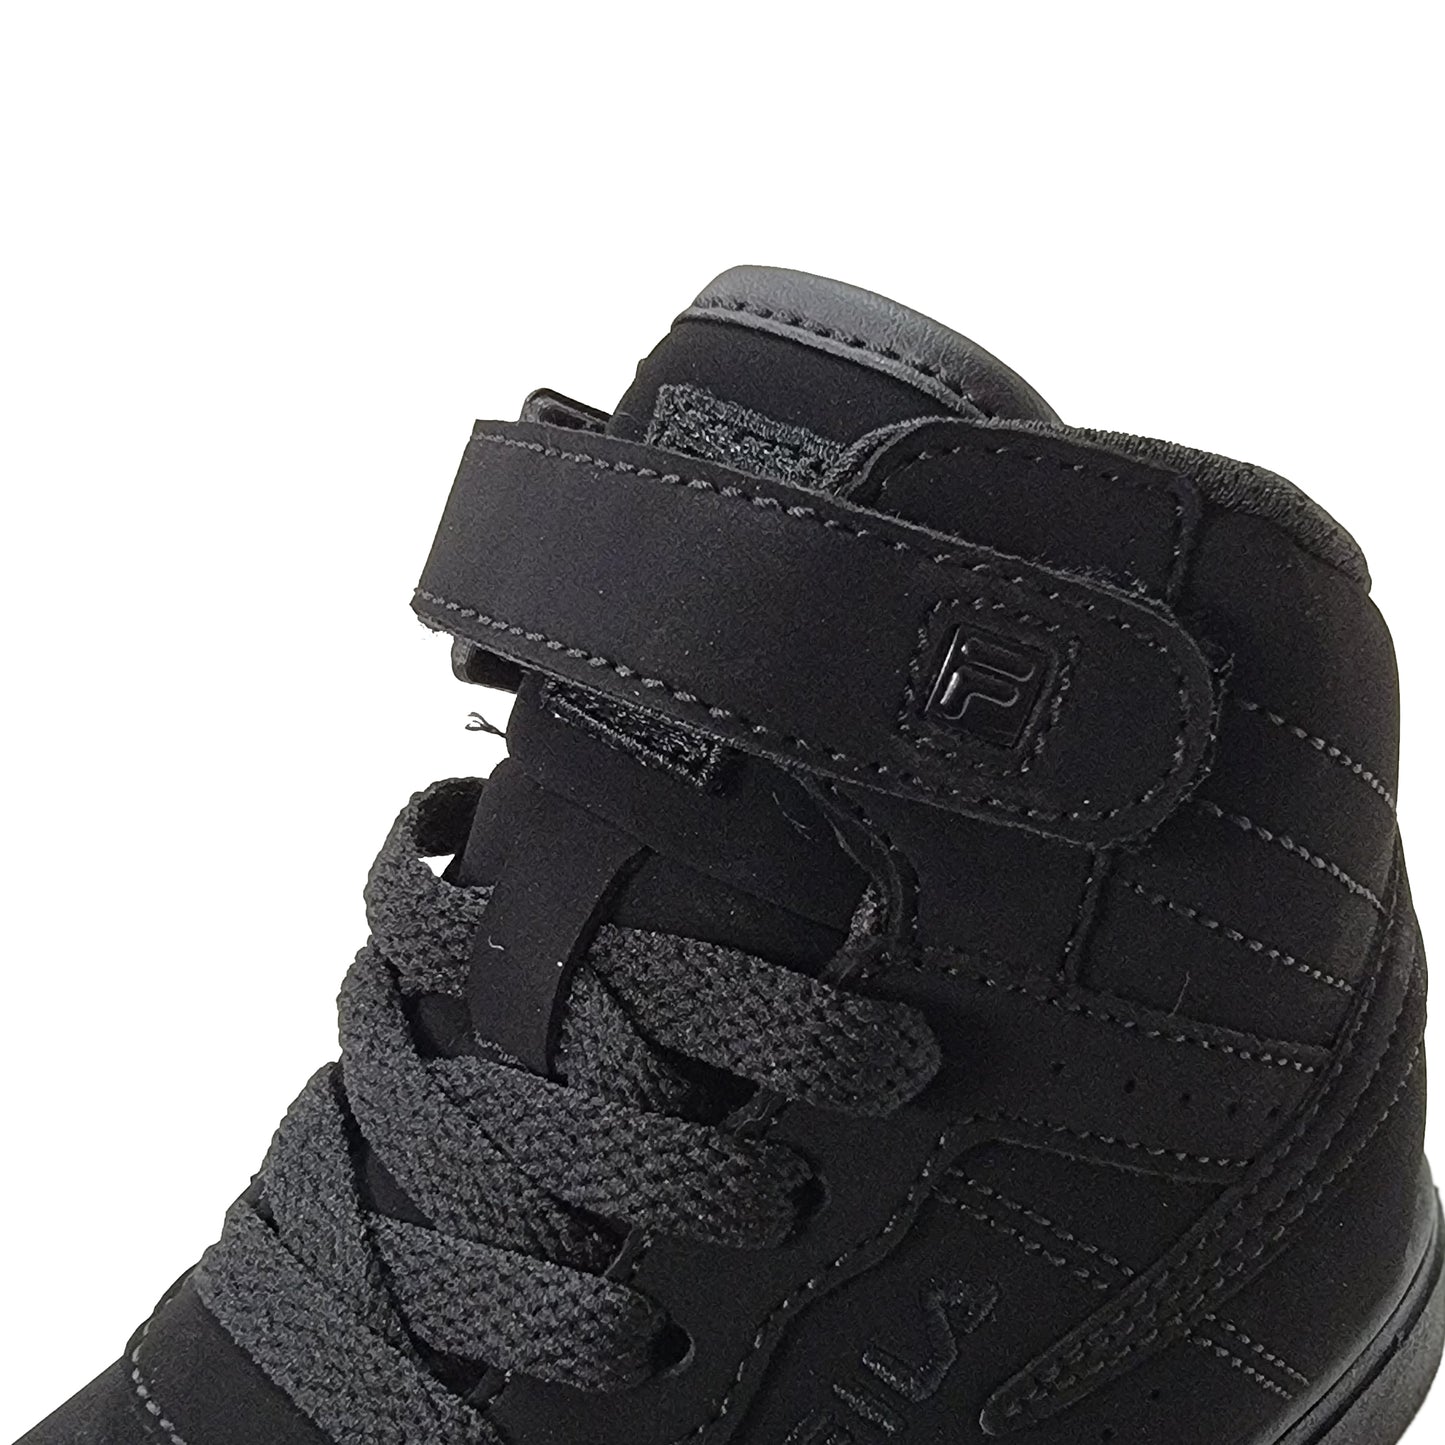 FILA Infant Vulc 13 MP Shoes Black Black Black 7CM00144-001